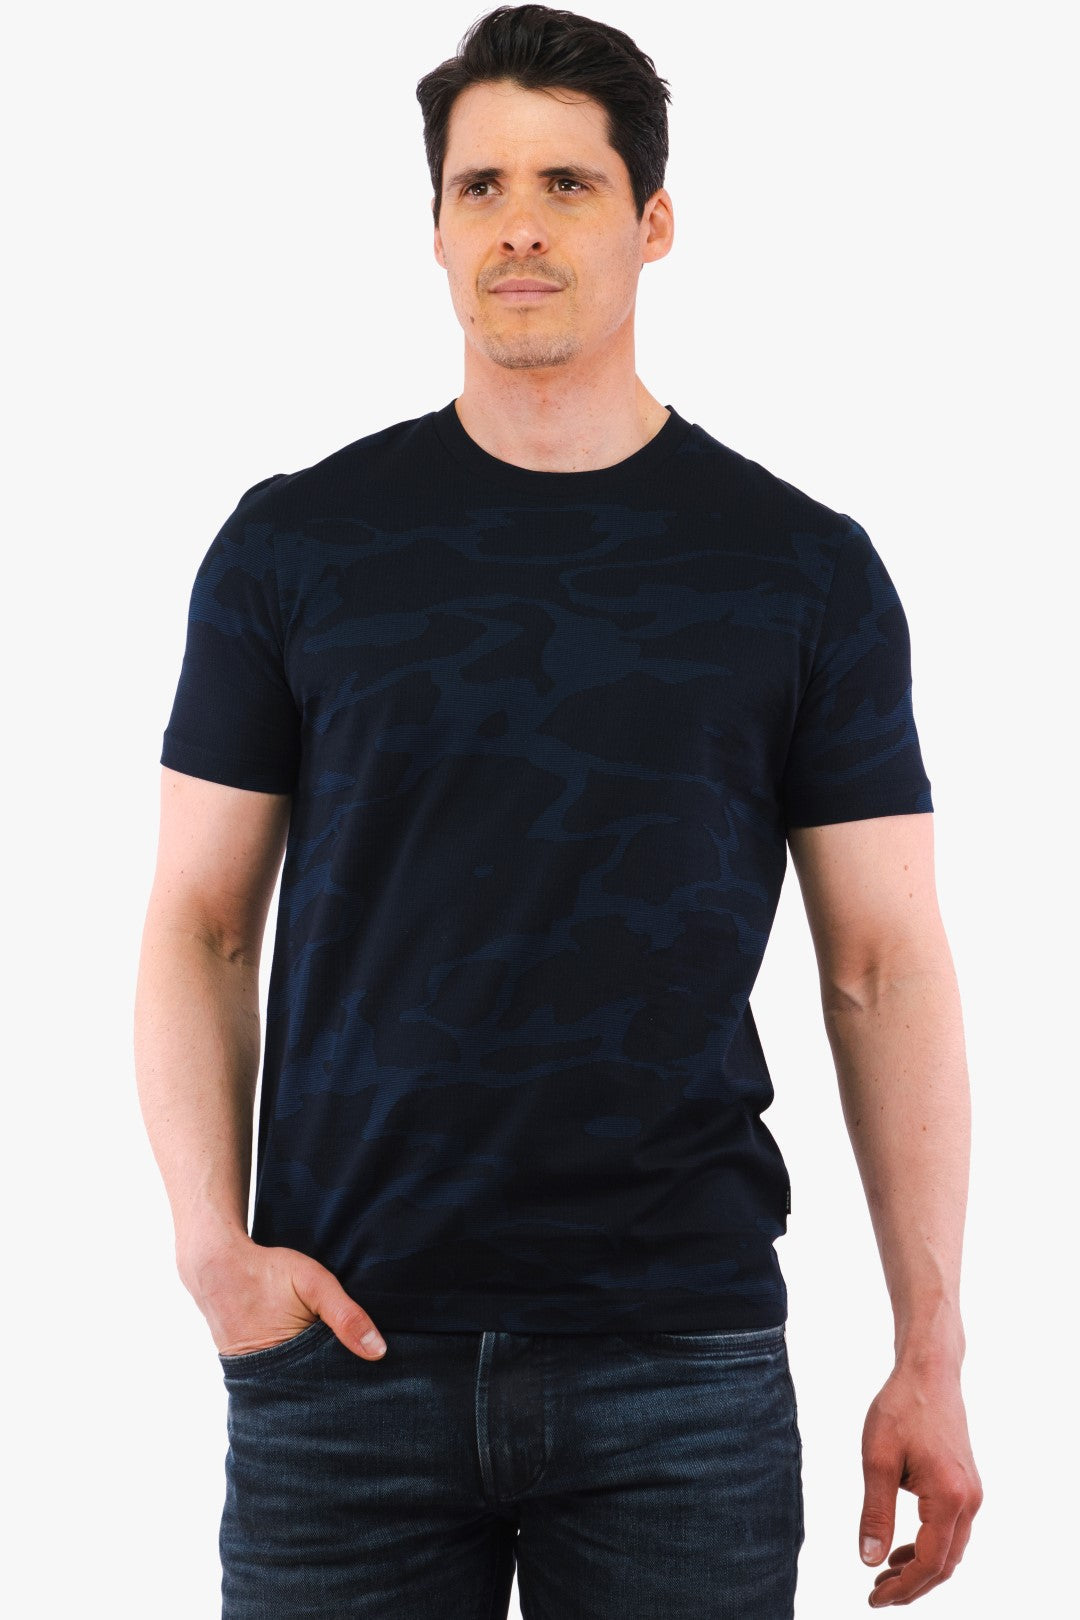 T-Shirt Thompson Hugo Boss De Couleur Bleu Fonce Camo Homme